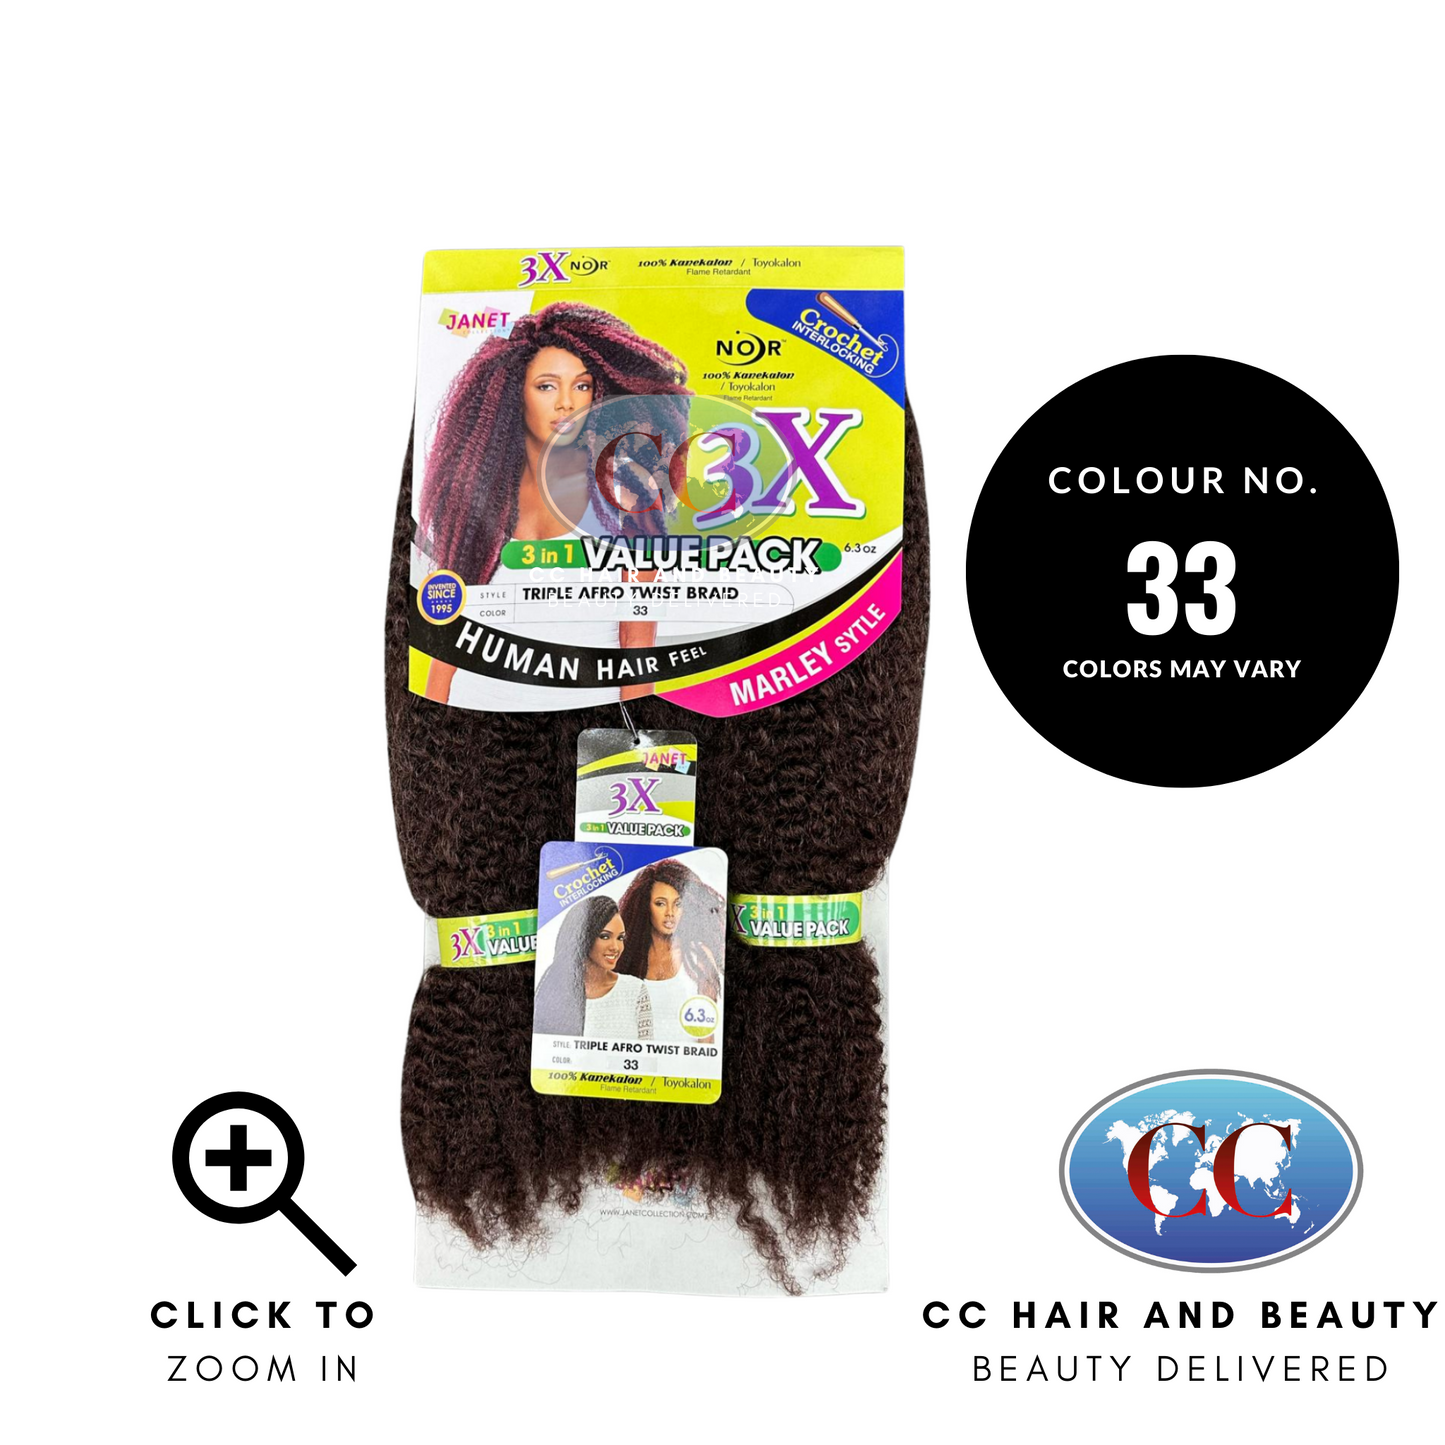 Janet Noir Triople Afro Twist Braid 3X - 3 in 1 Value Pack